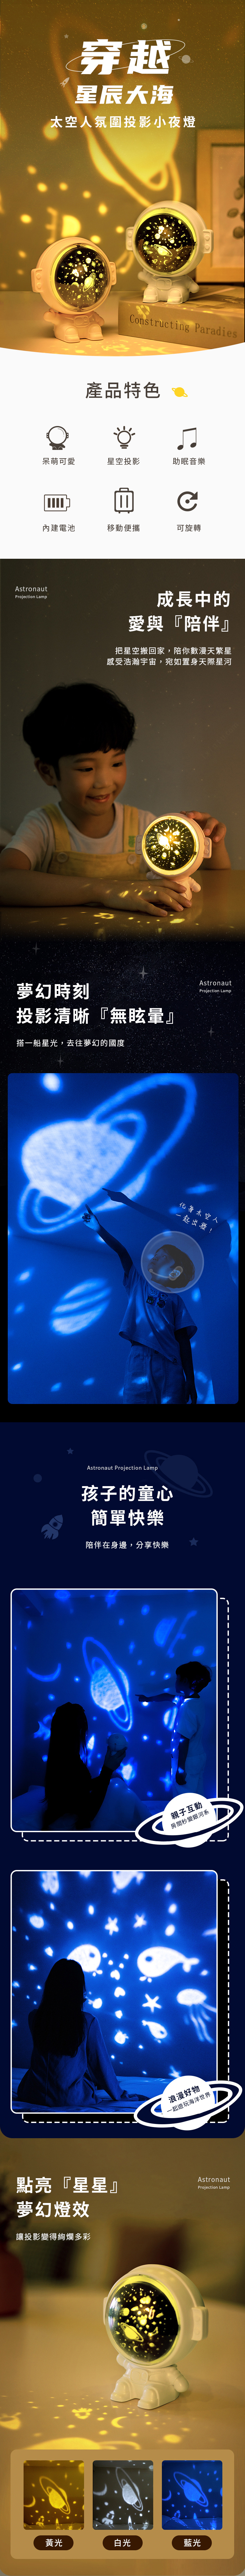 【3/29~5/31畢業季早鳥88折優惠】創意小物館 太空人氛圍投影小夜燈 粉色